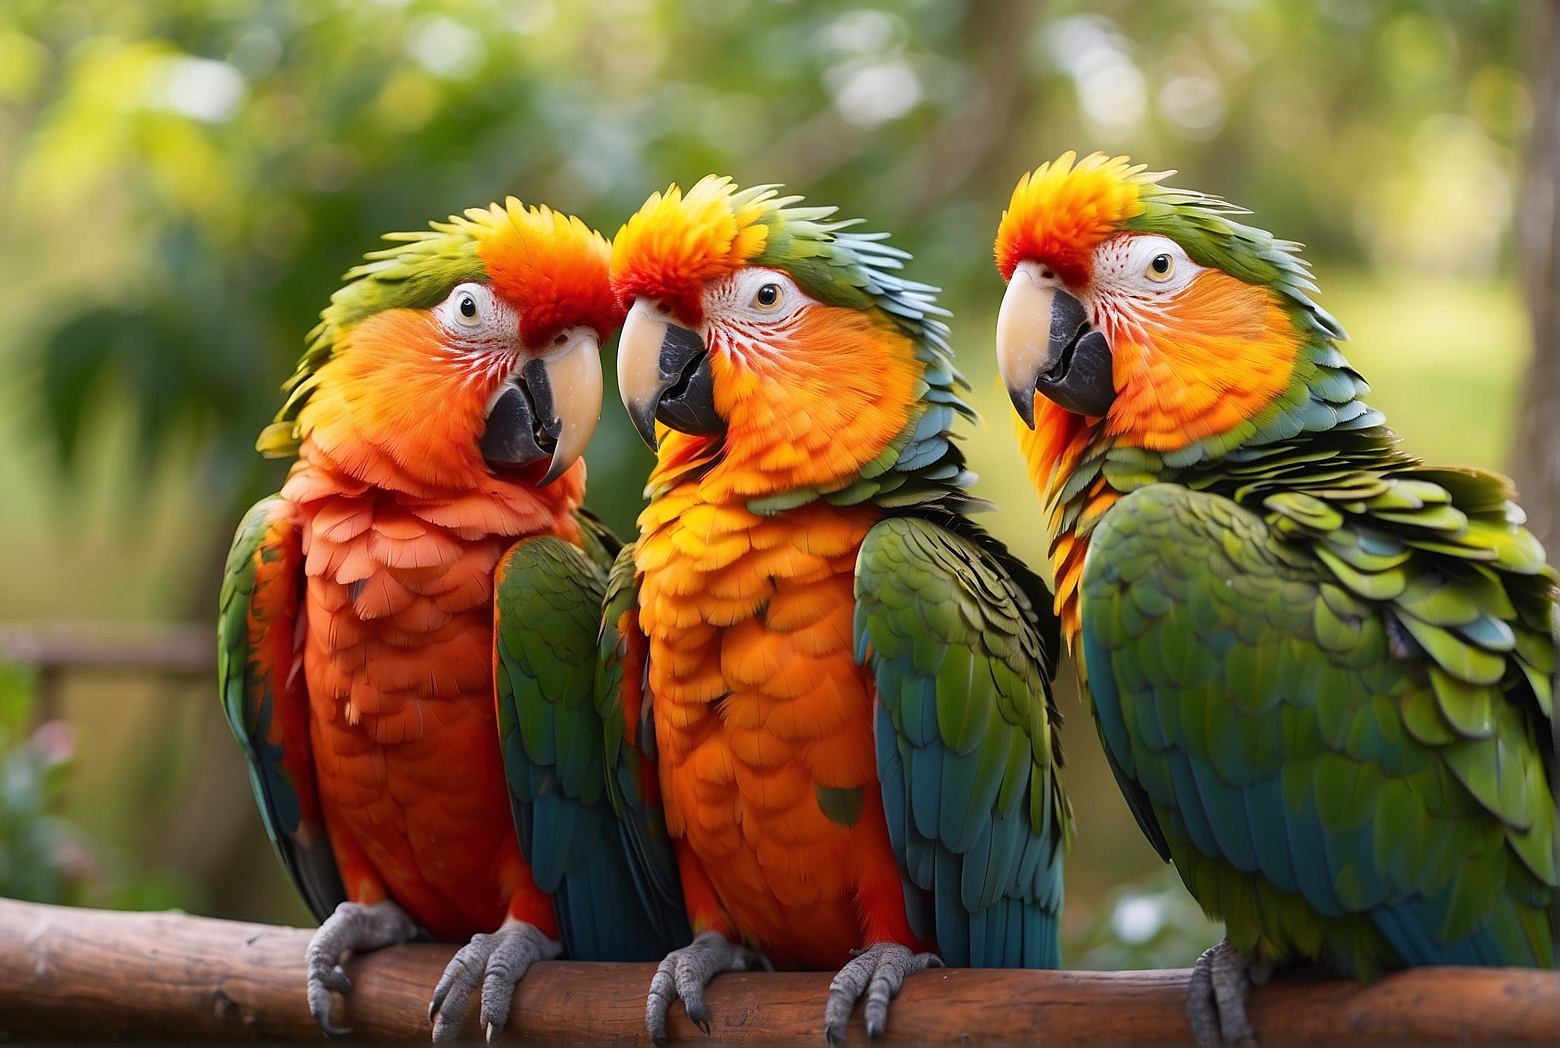 Do Parrots Form Lifelong Bonds?